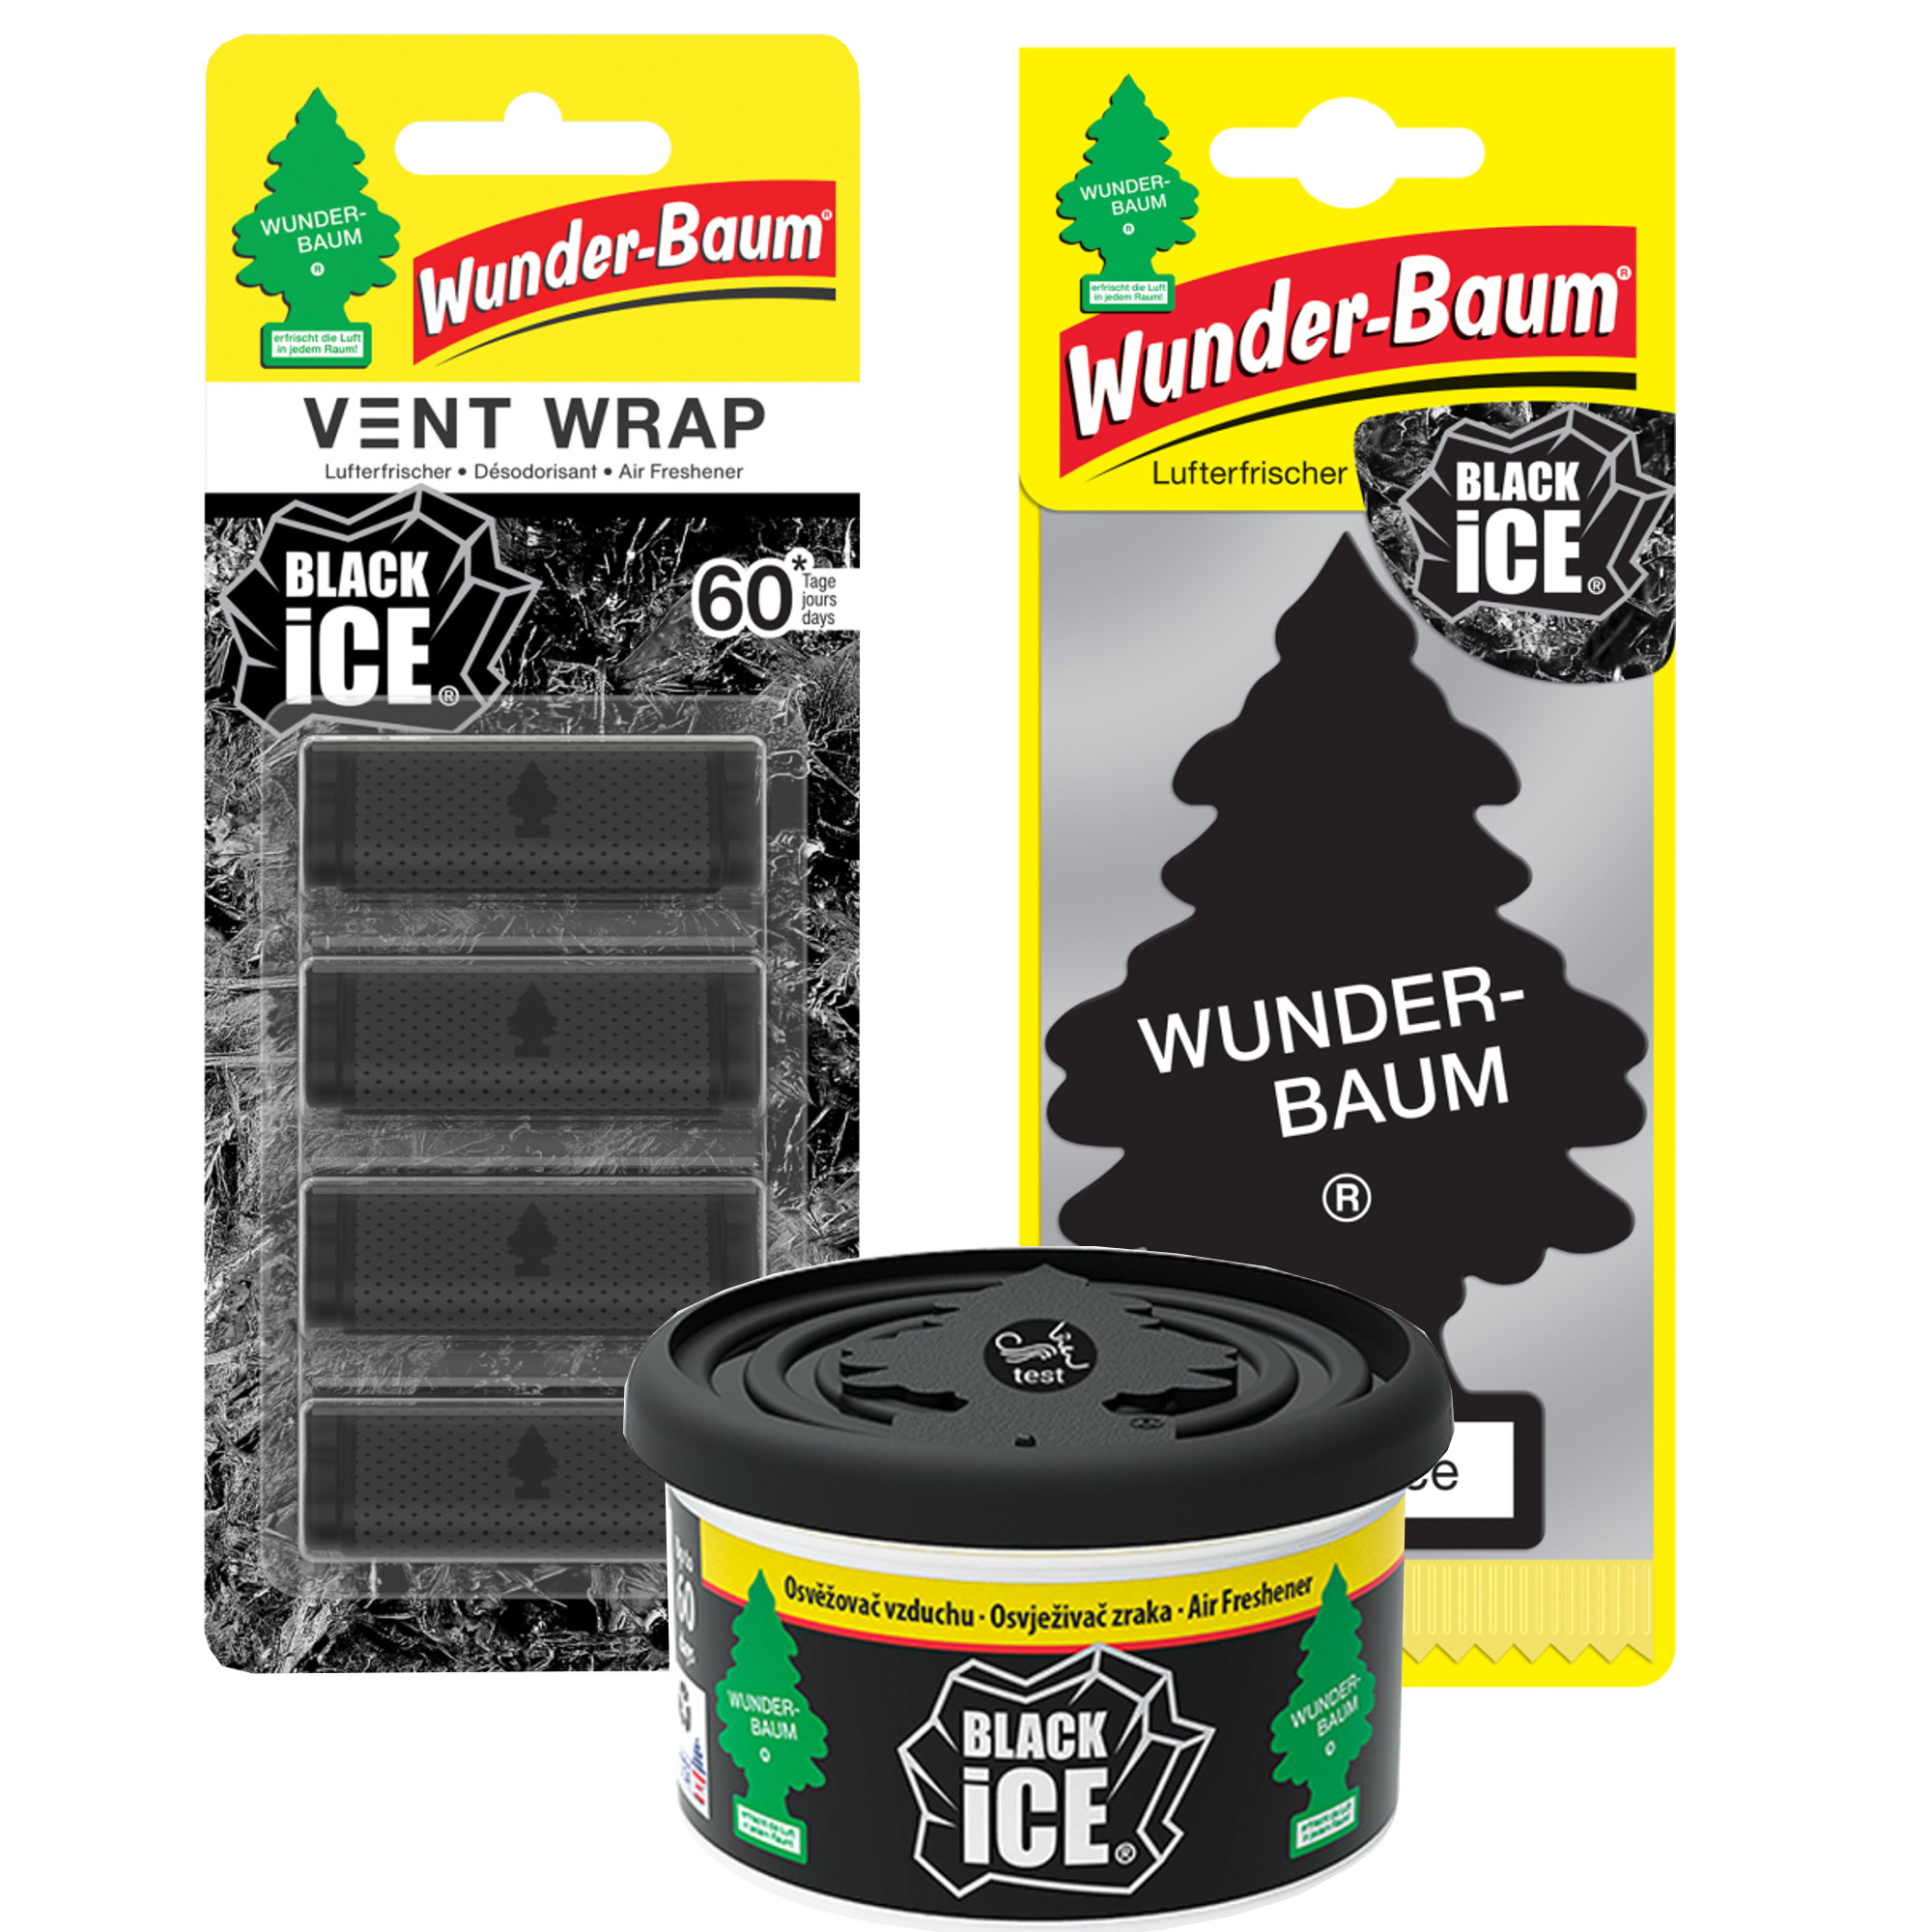 Wunder Baum Vent Wrap Black Ice 4szt. Zapach samochodowy